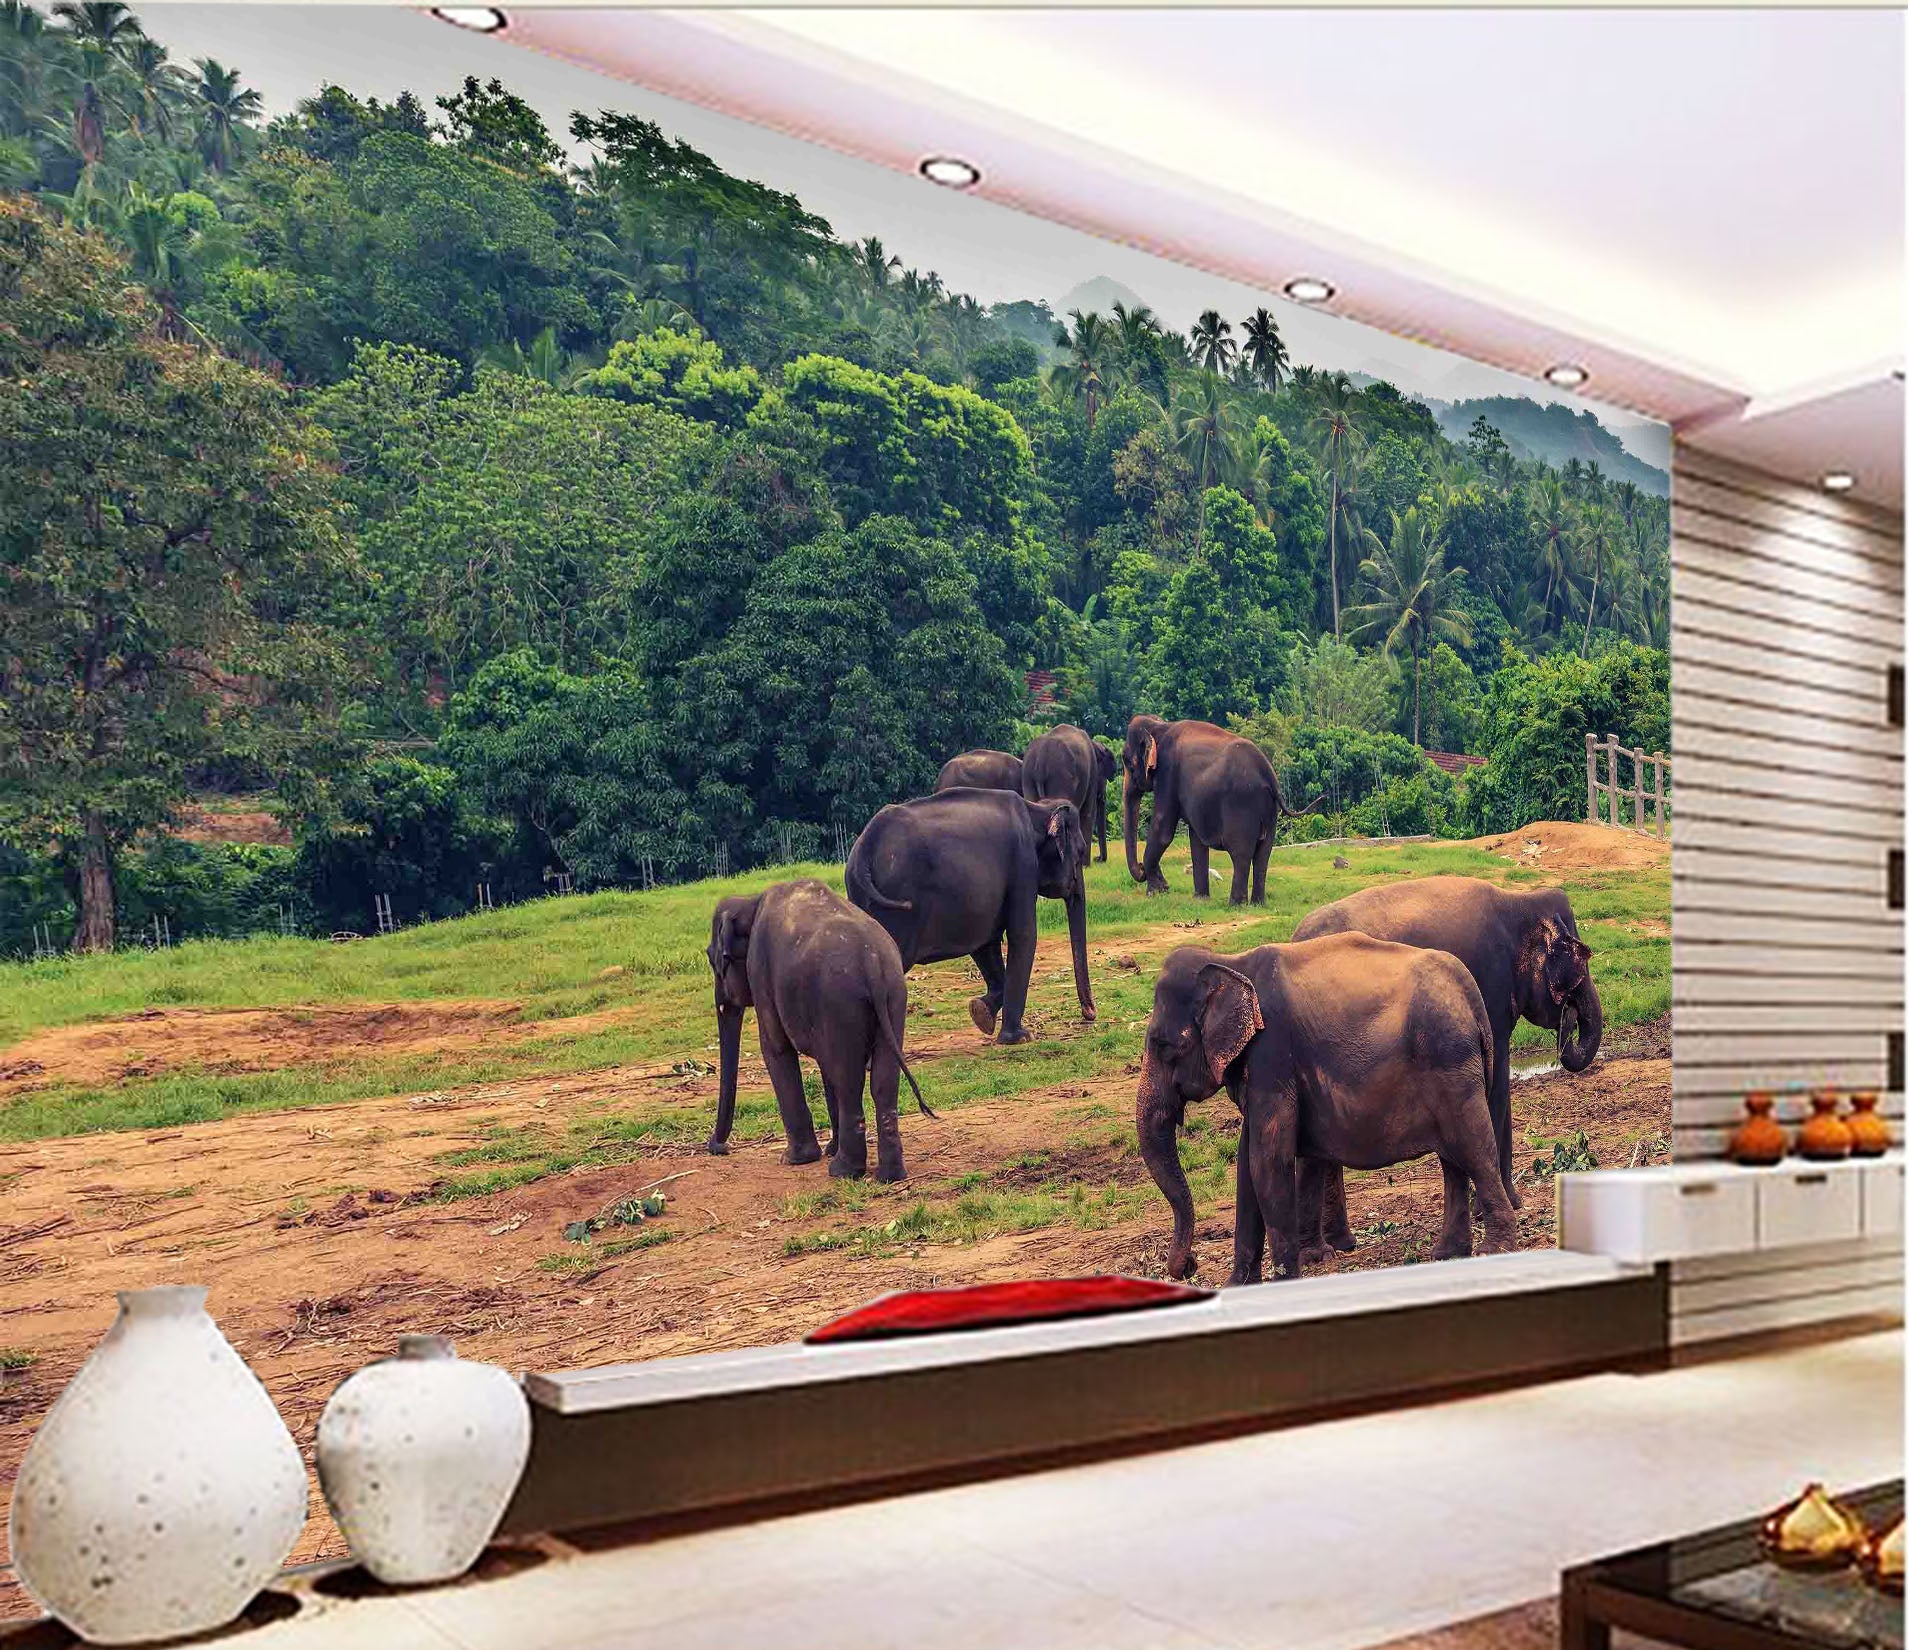 3D Elephant Herd 1056 Wall Murals